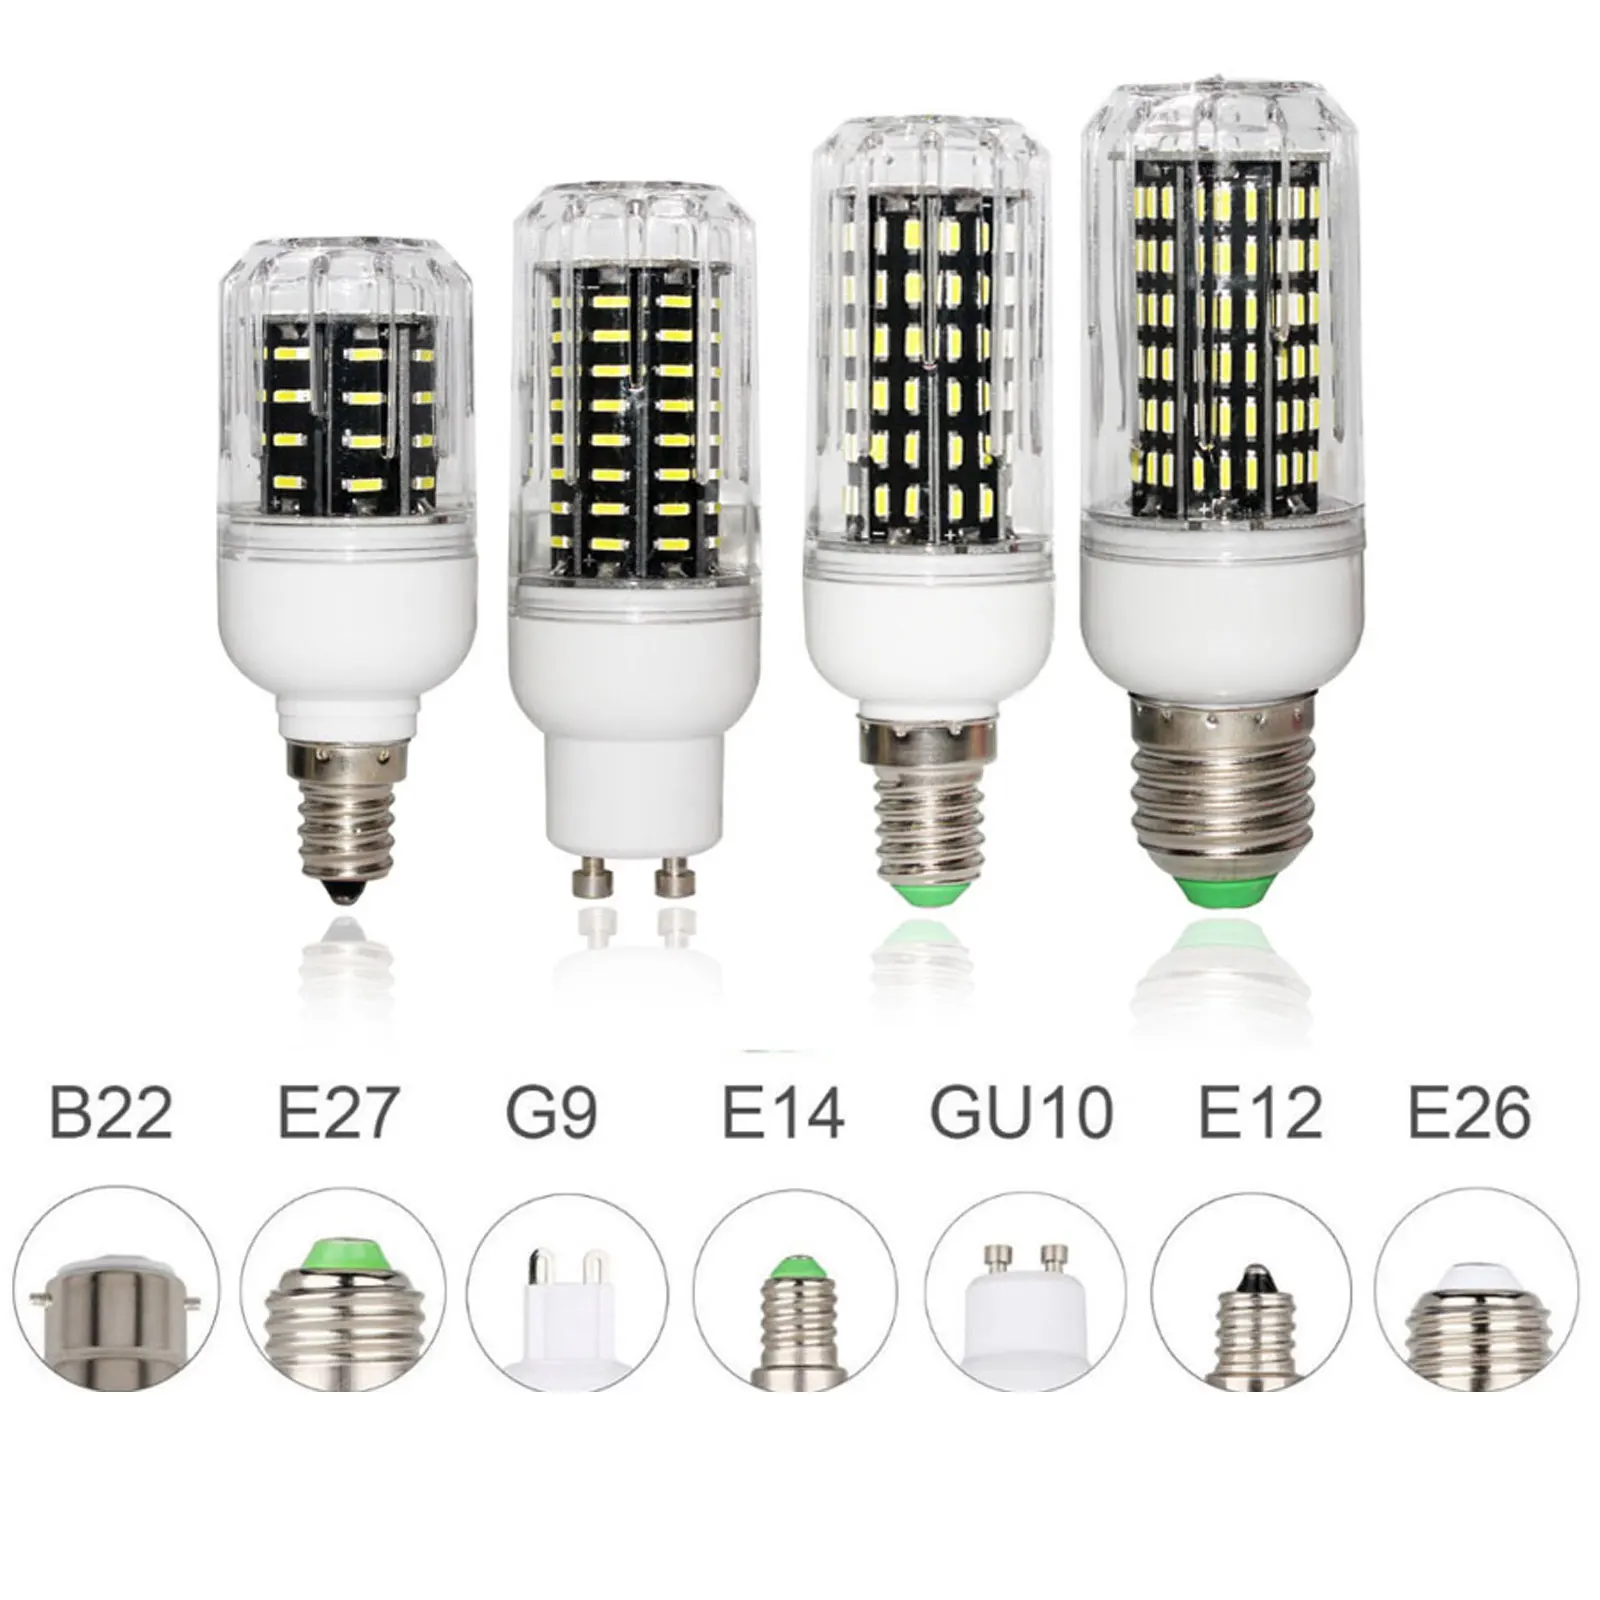 E27 E14 LED Corn Bulb Lamp 4014 SMD Light 10W 20W 25W 30W Lighting 36 72 96 138LEDs Ampoule Led Spotlight Replace Halogen Lamps